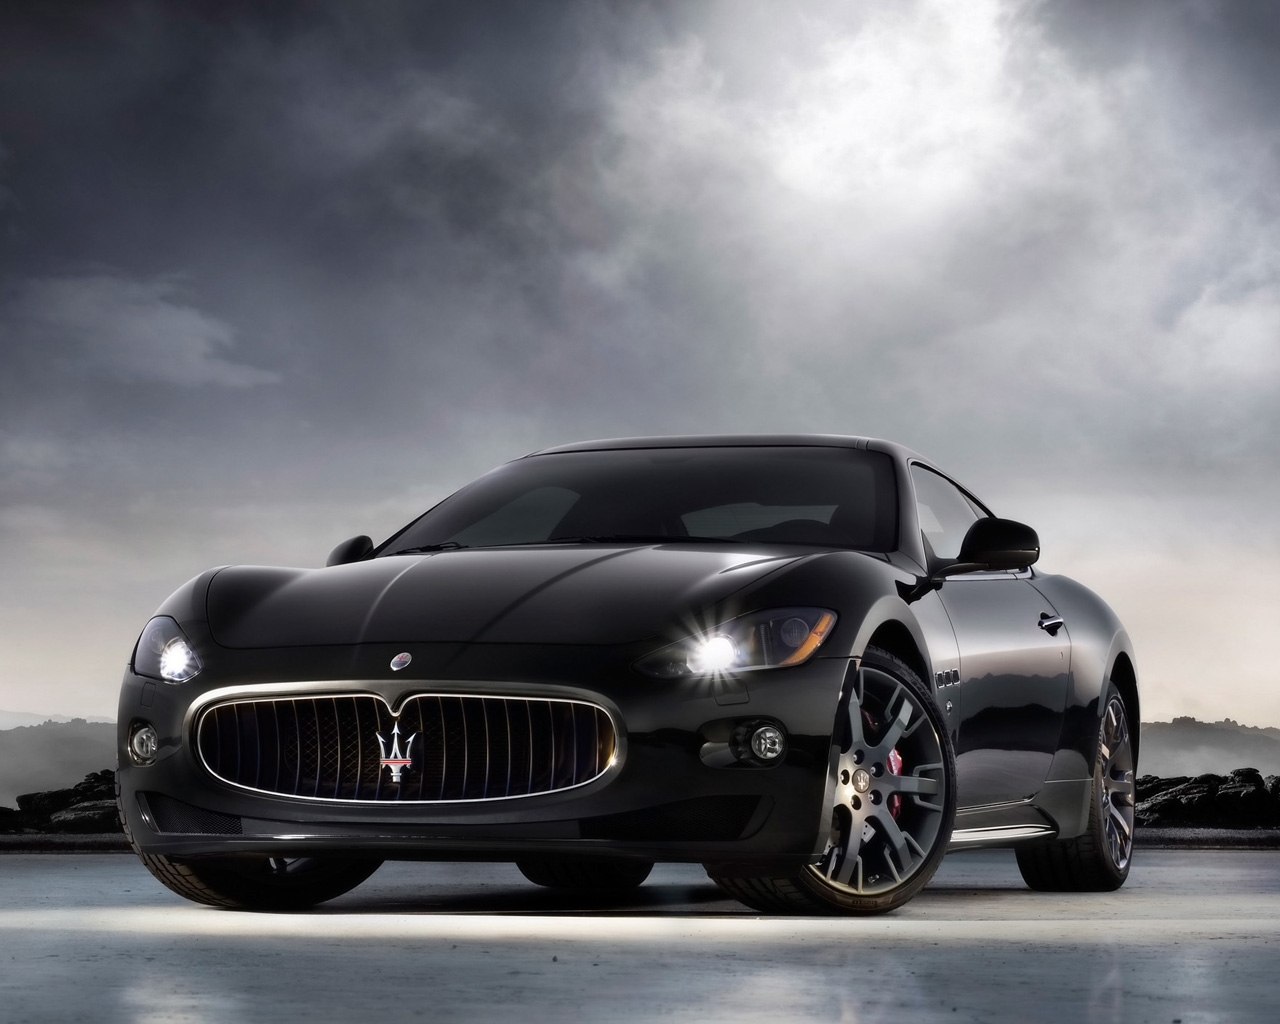 Скачать картинку Мазератти (Maserati), Транспорт, Машины в телефон бесплатно.